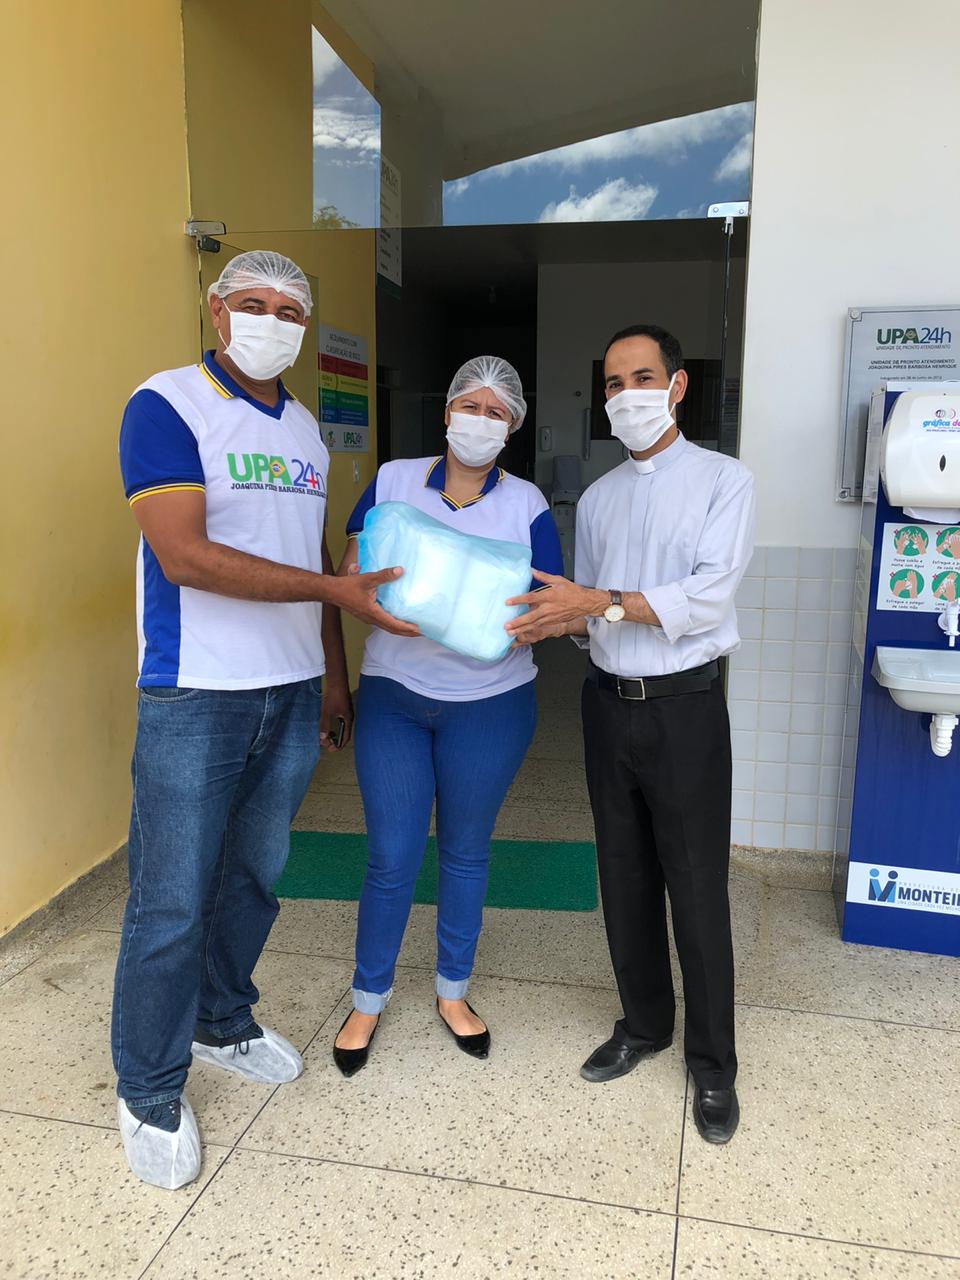 IMG-20200504-WA0087 Paróquia de Nossa Senhora das Dores faz doação de máscaras ao Hospital Regional Santa Filomena e UPA da cidade de Monteiro